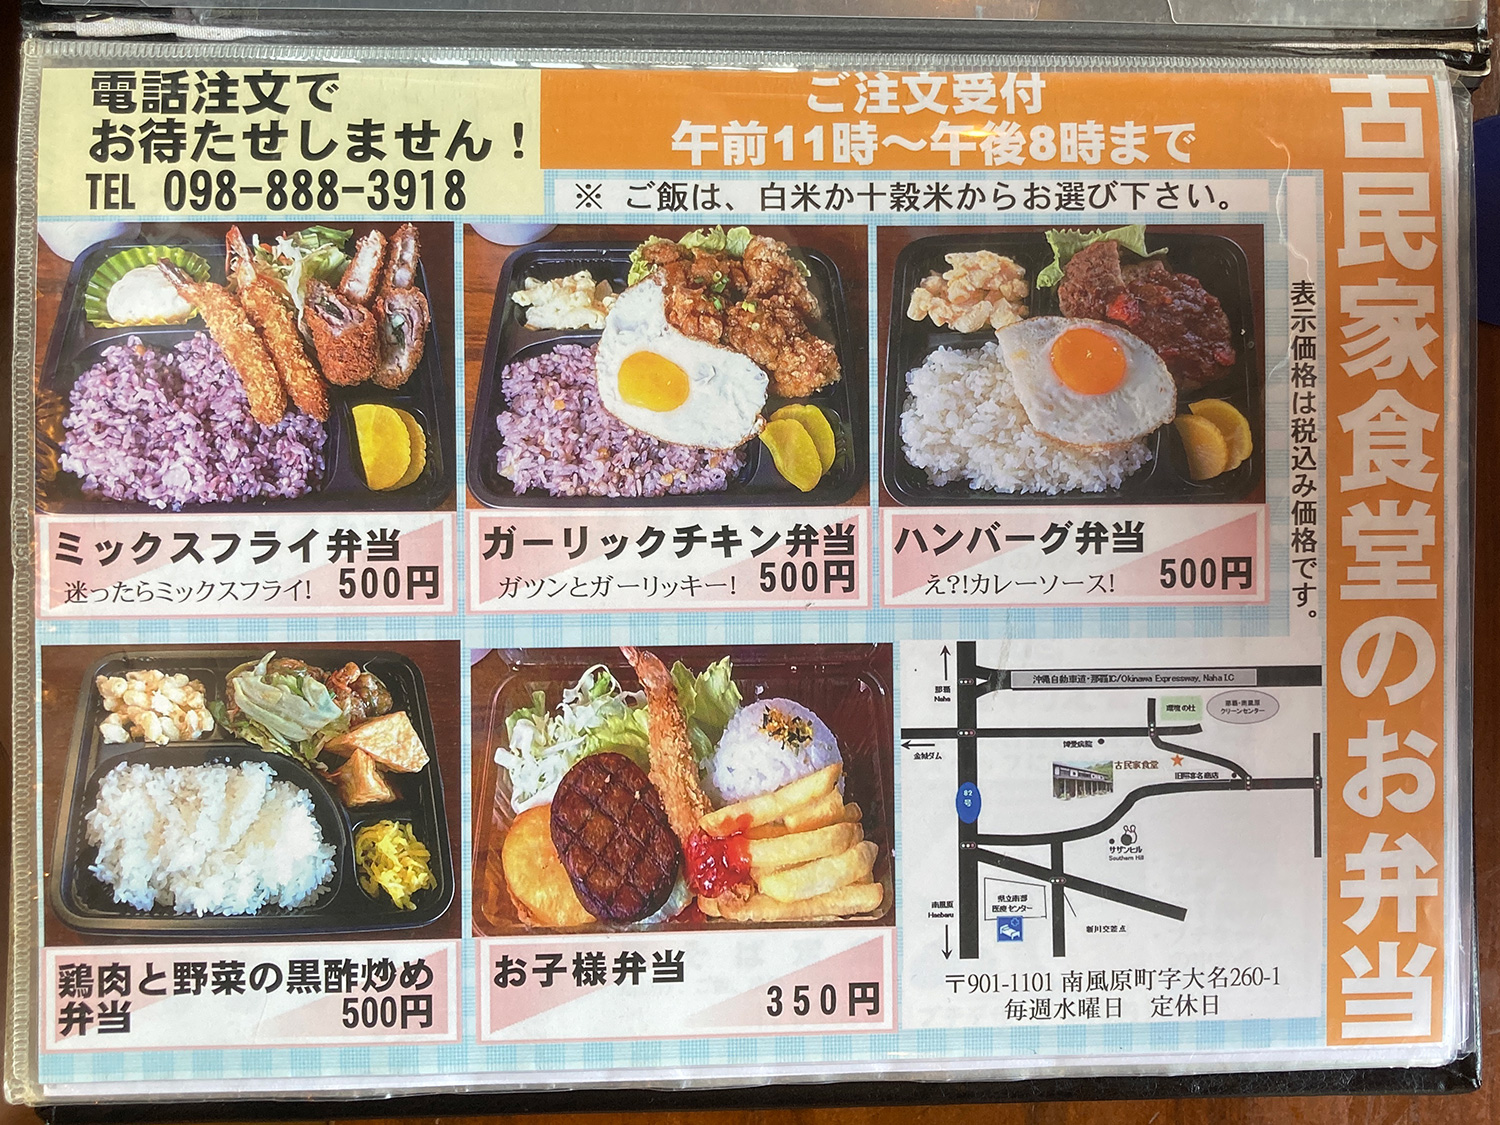 お弁当メニューも。この内容で500円って、けっこう充実していると思います。